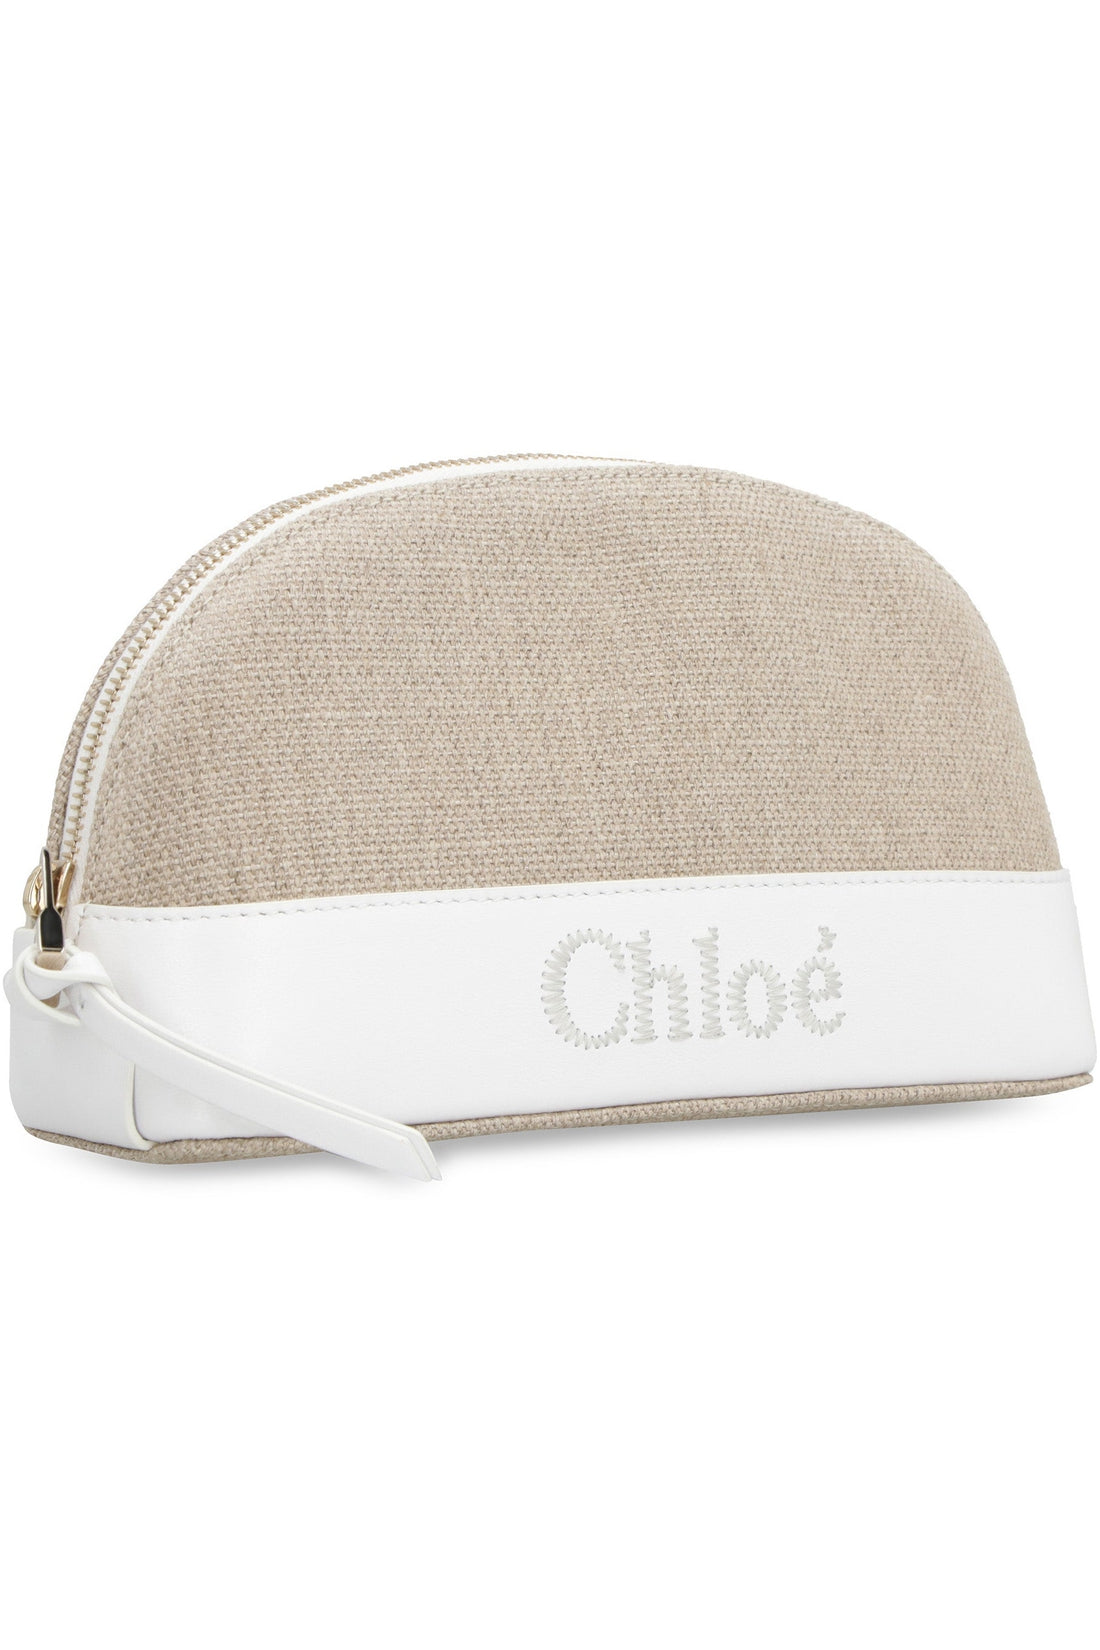 Chloé-OUTLET-SALE-Chloé Sense wash bag-ARCHIVIST